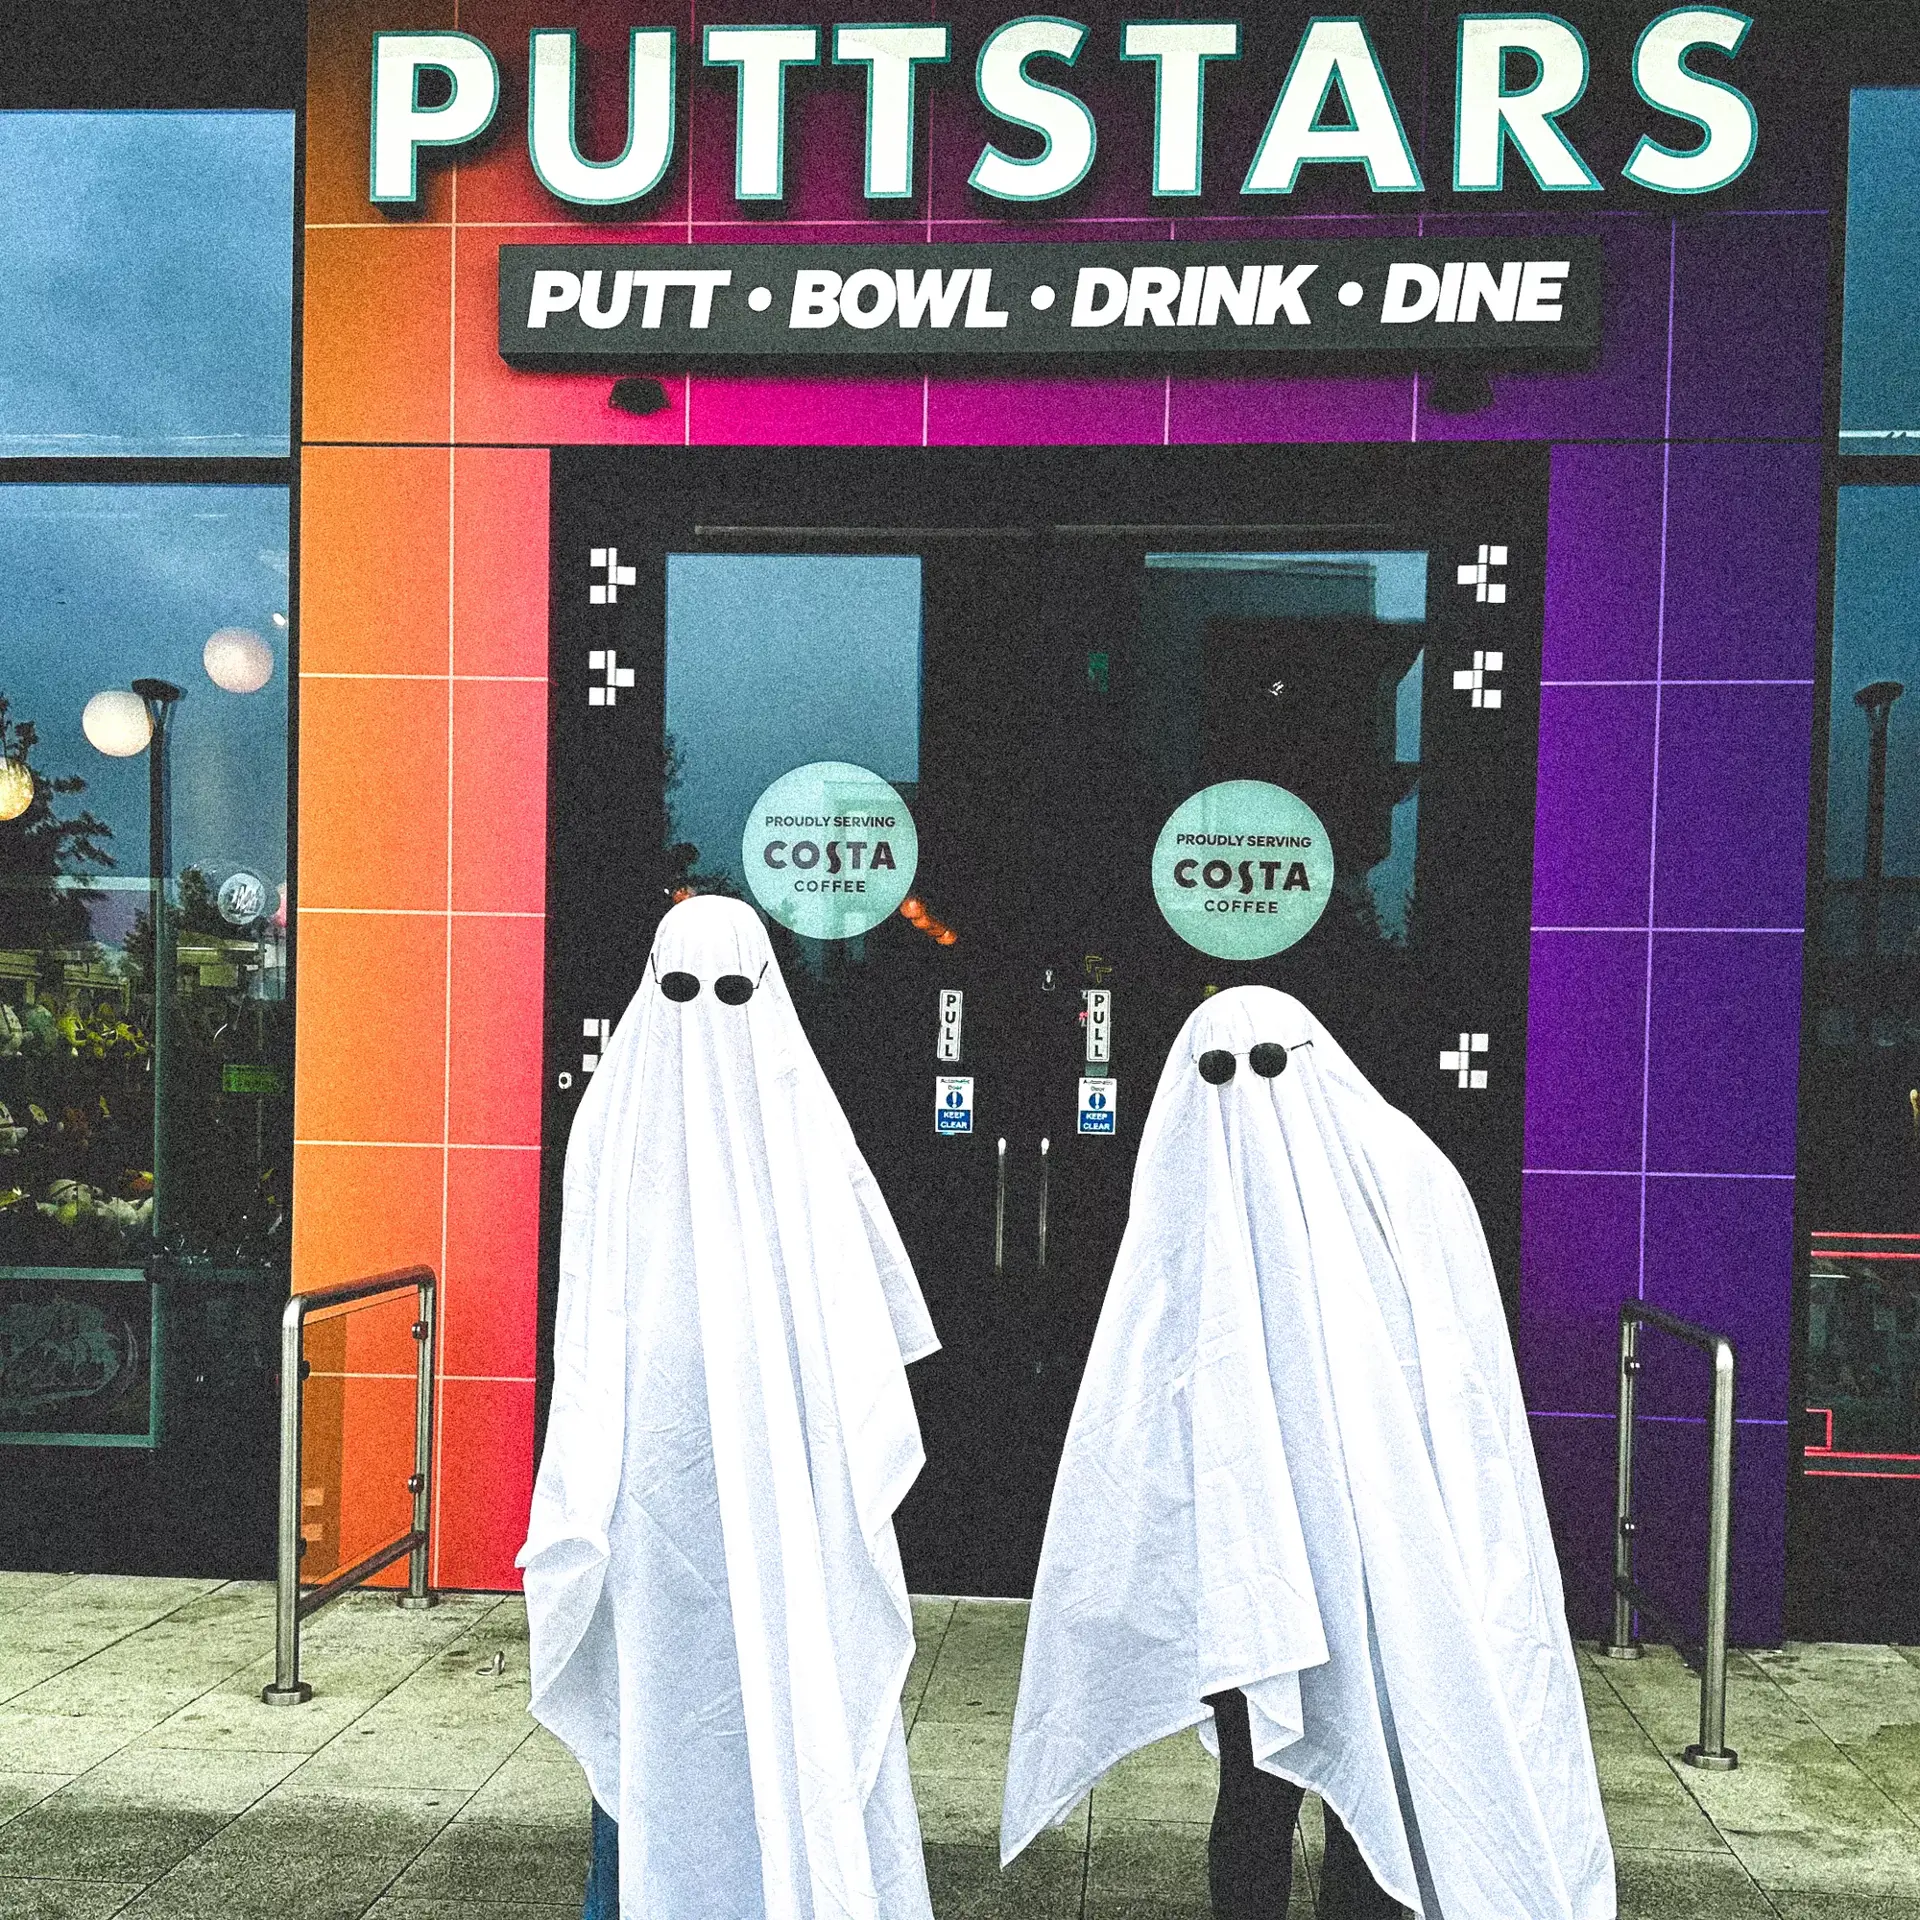 Halloween at Puttstars